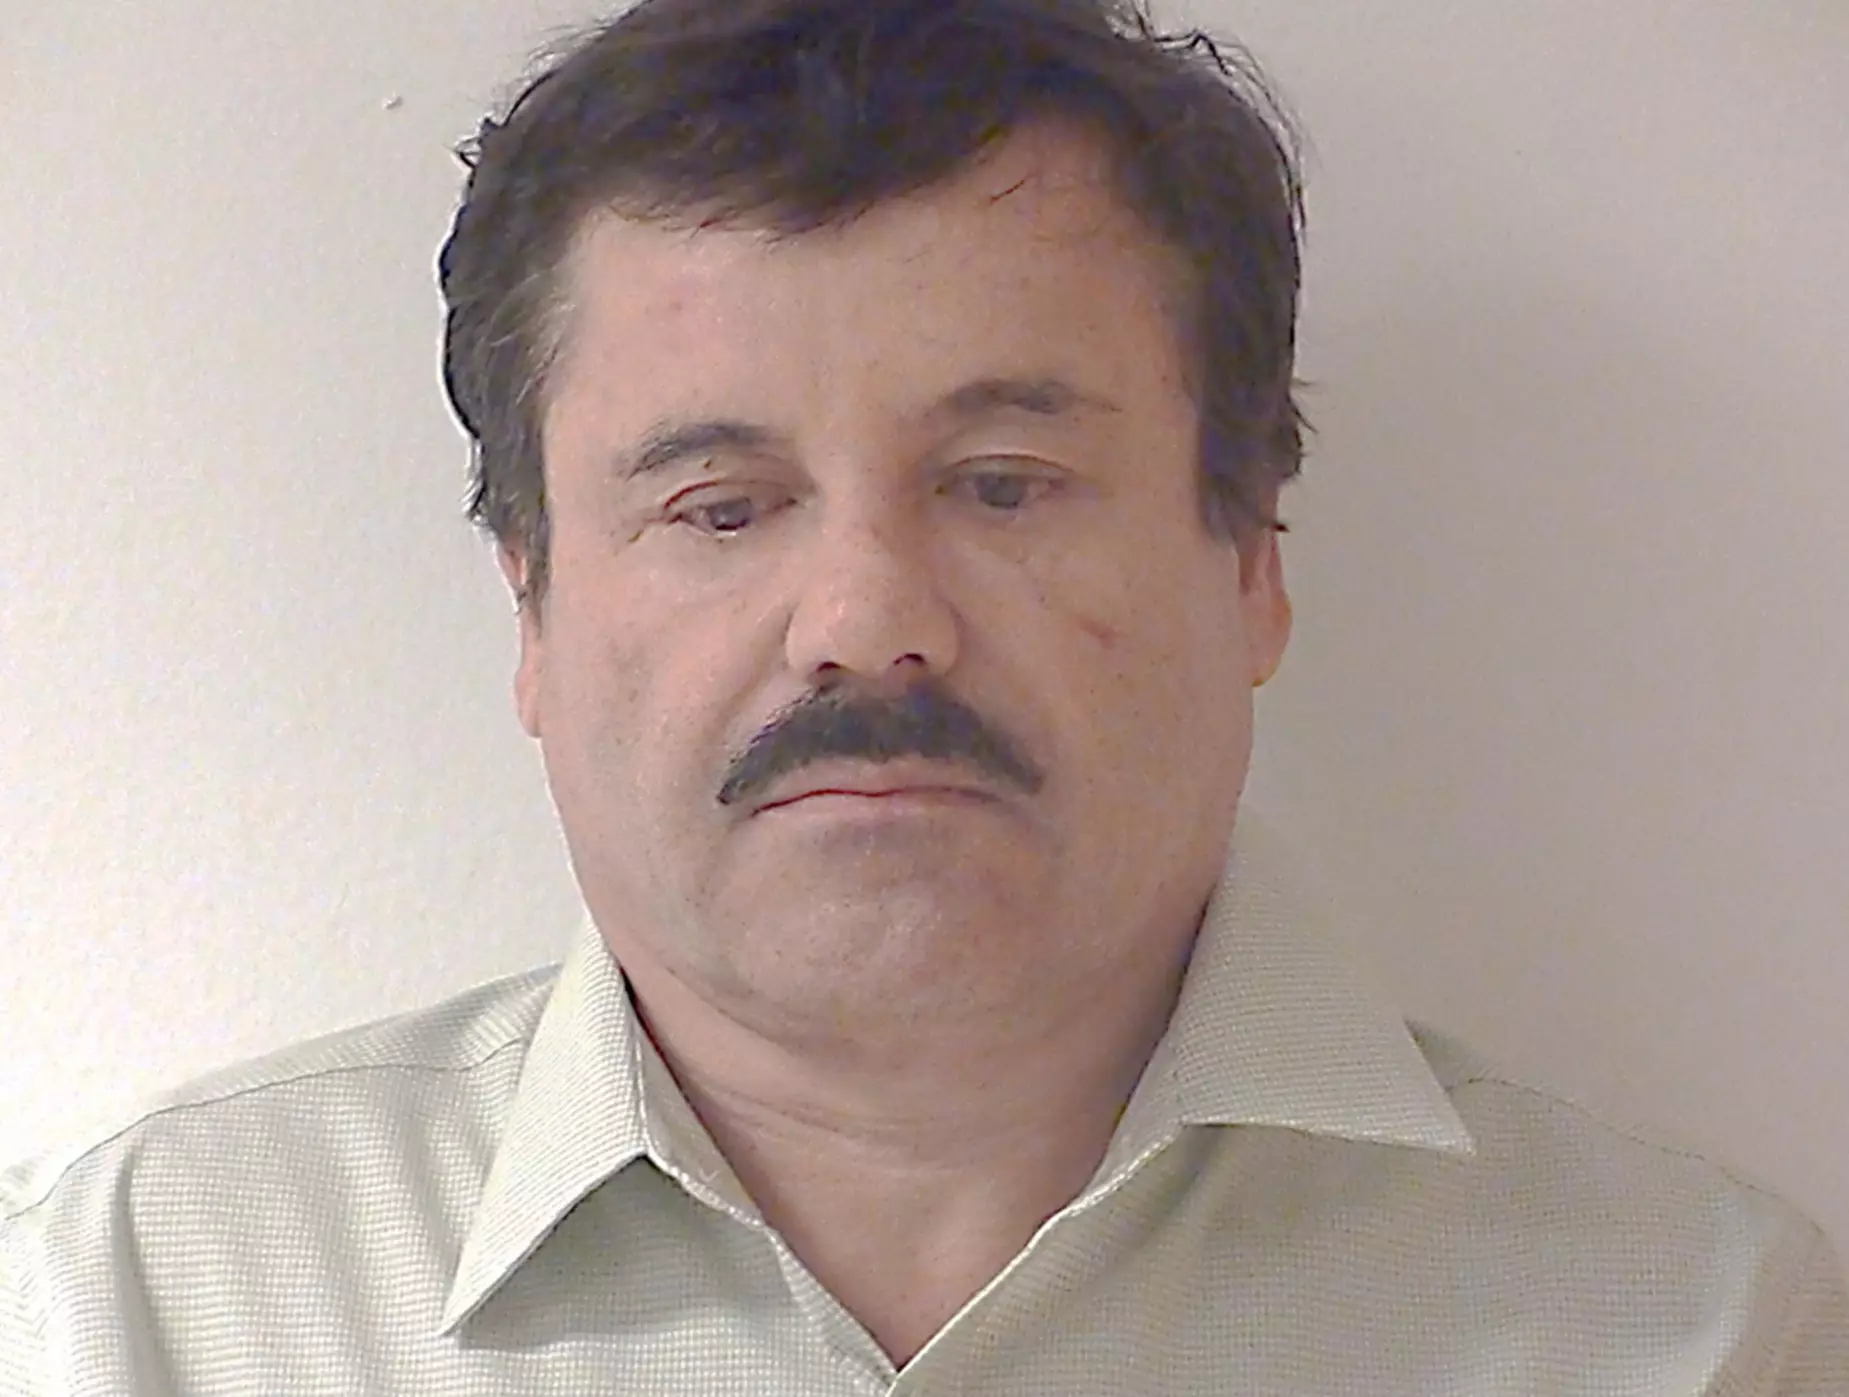 El Chapo after his 2014 arrest.